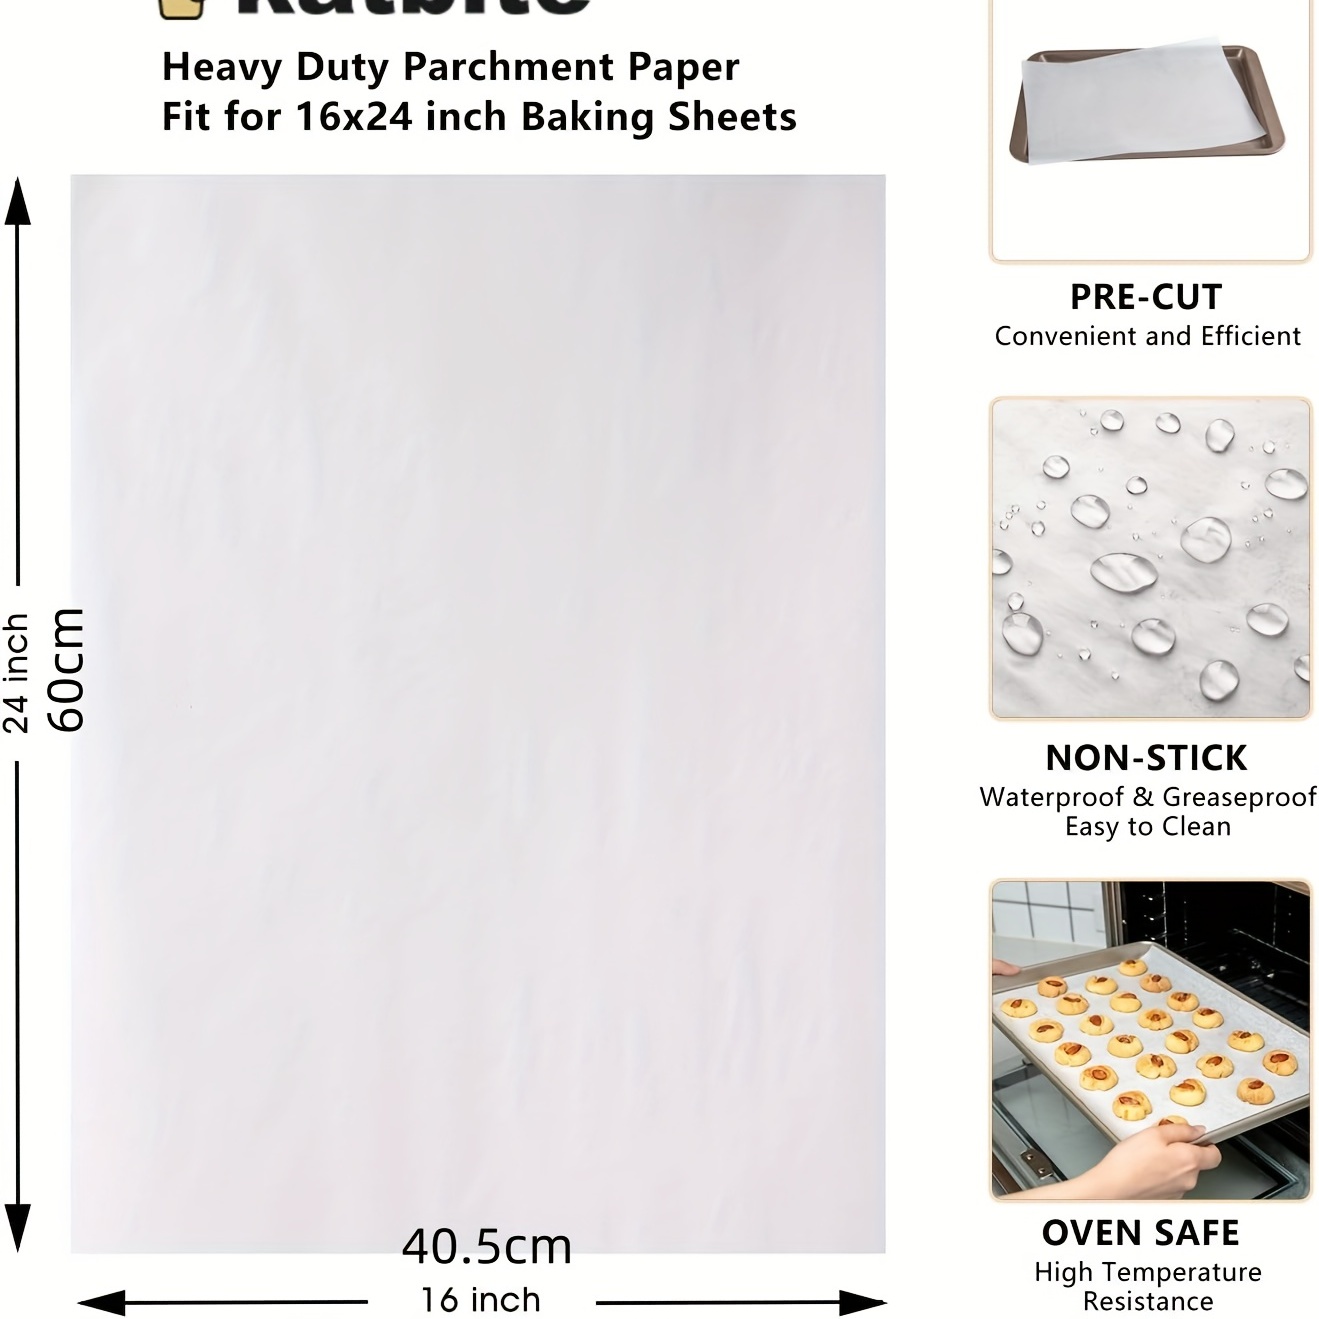 Katbite 100 Pcs Parchment Paper Sheets,16x24 Inches Non-Stick